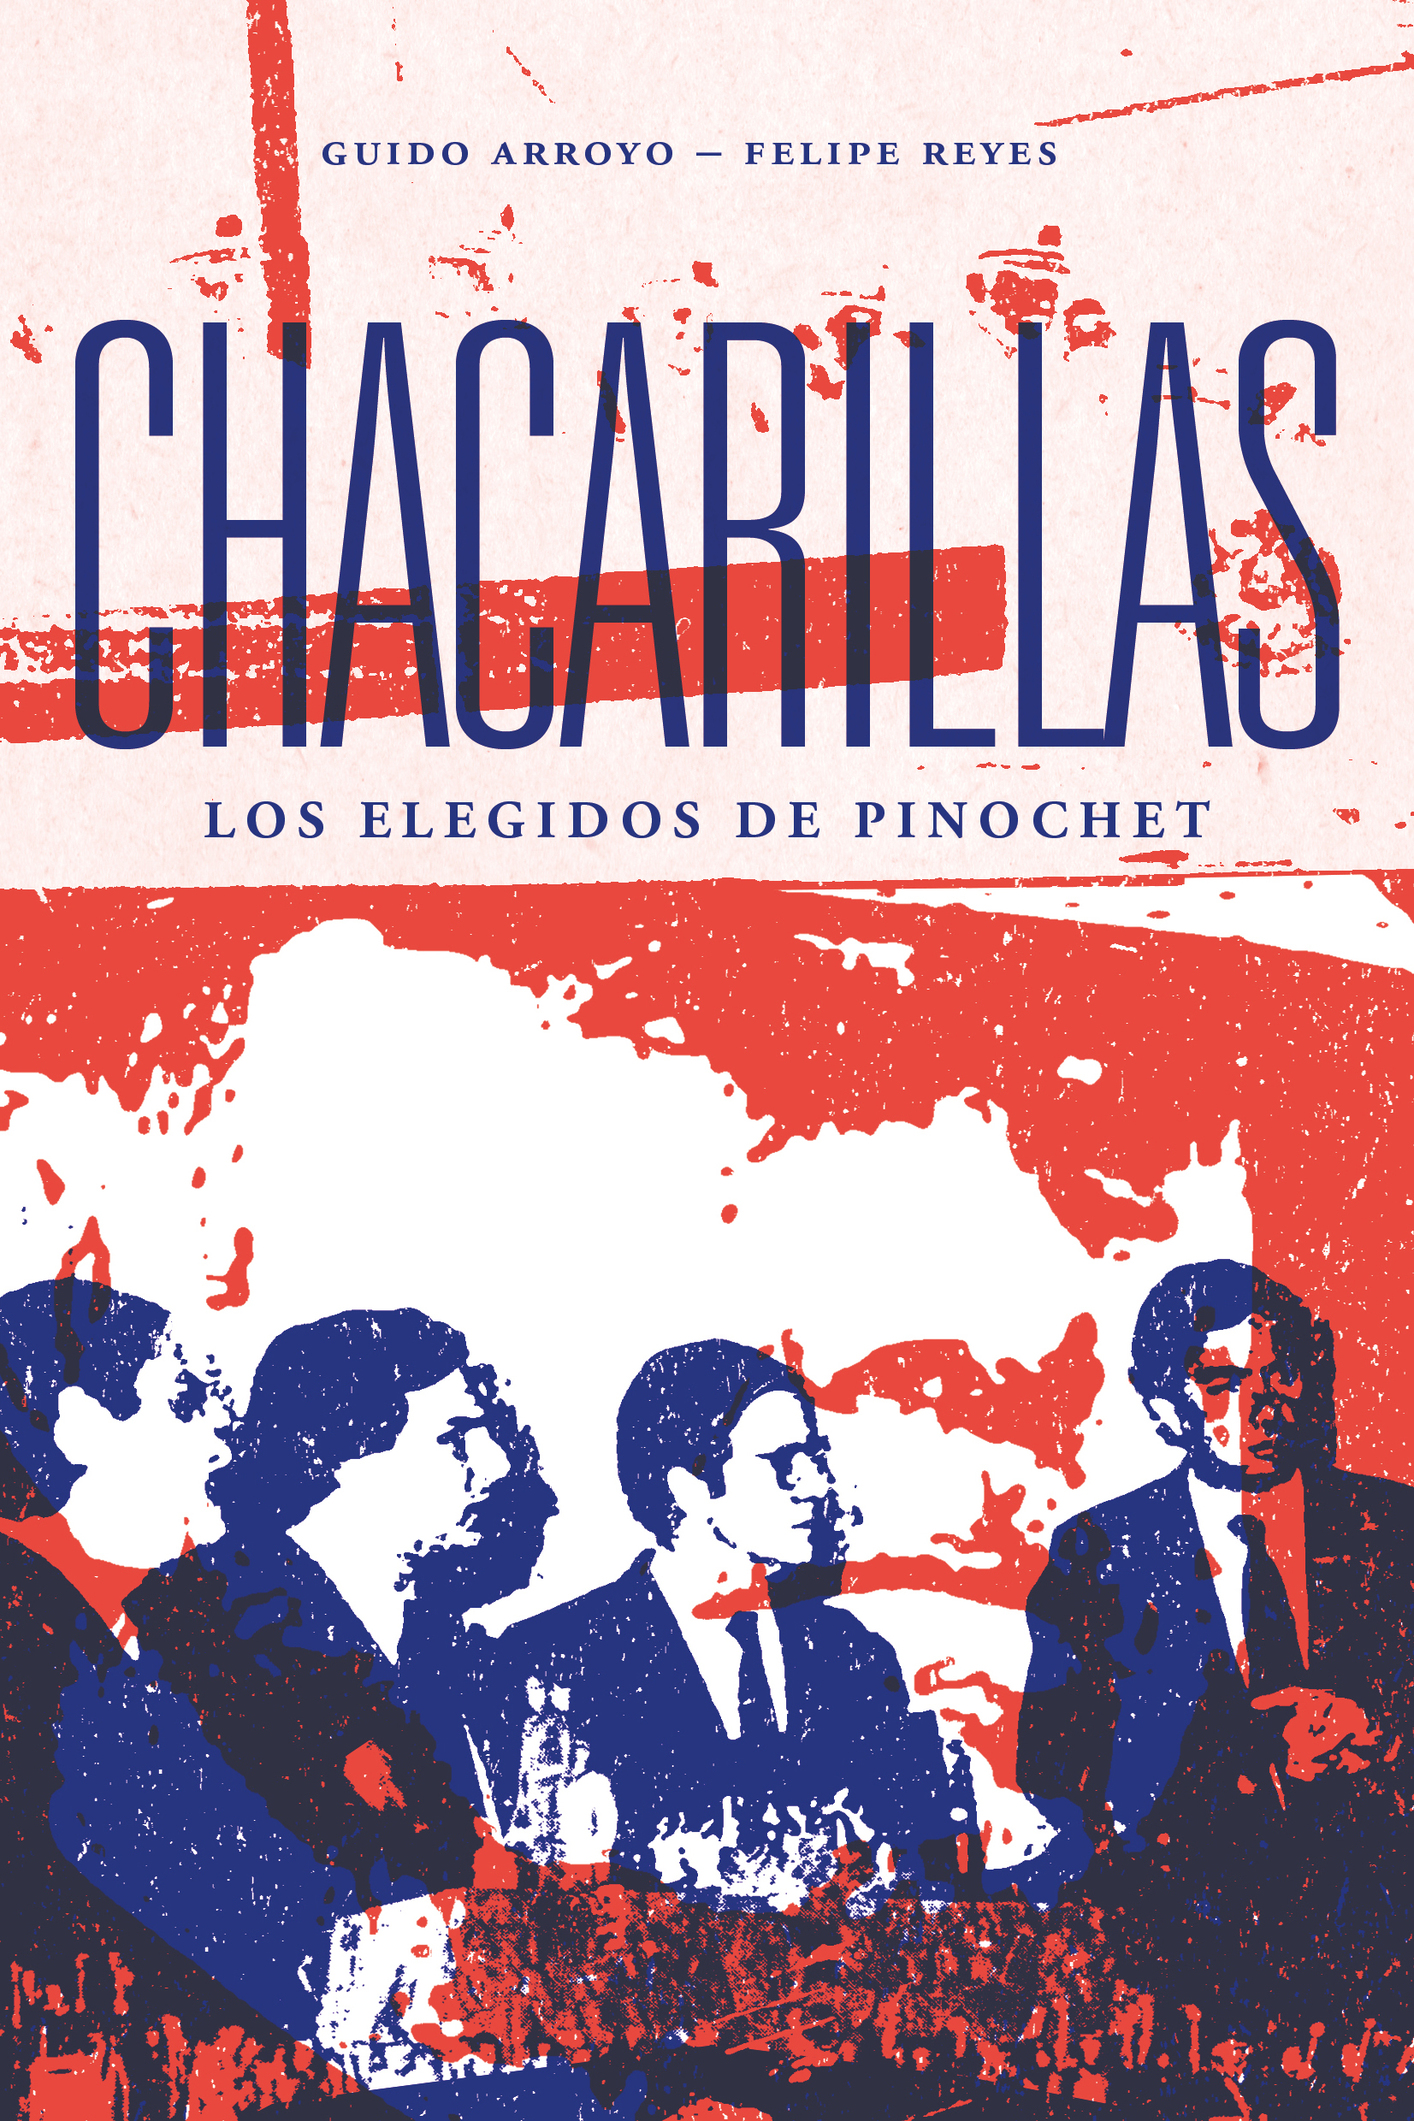 Guido Arroyo G - Felipe Reyes F Chacarillas Los elegidos de Pinochet - photo 1